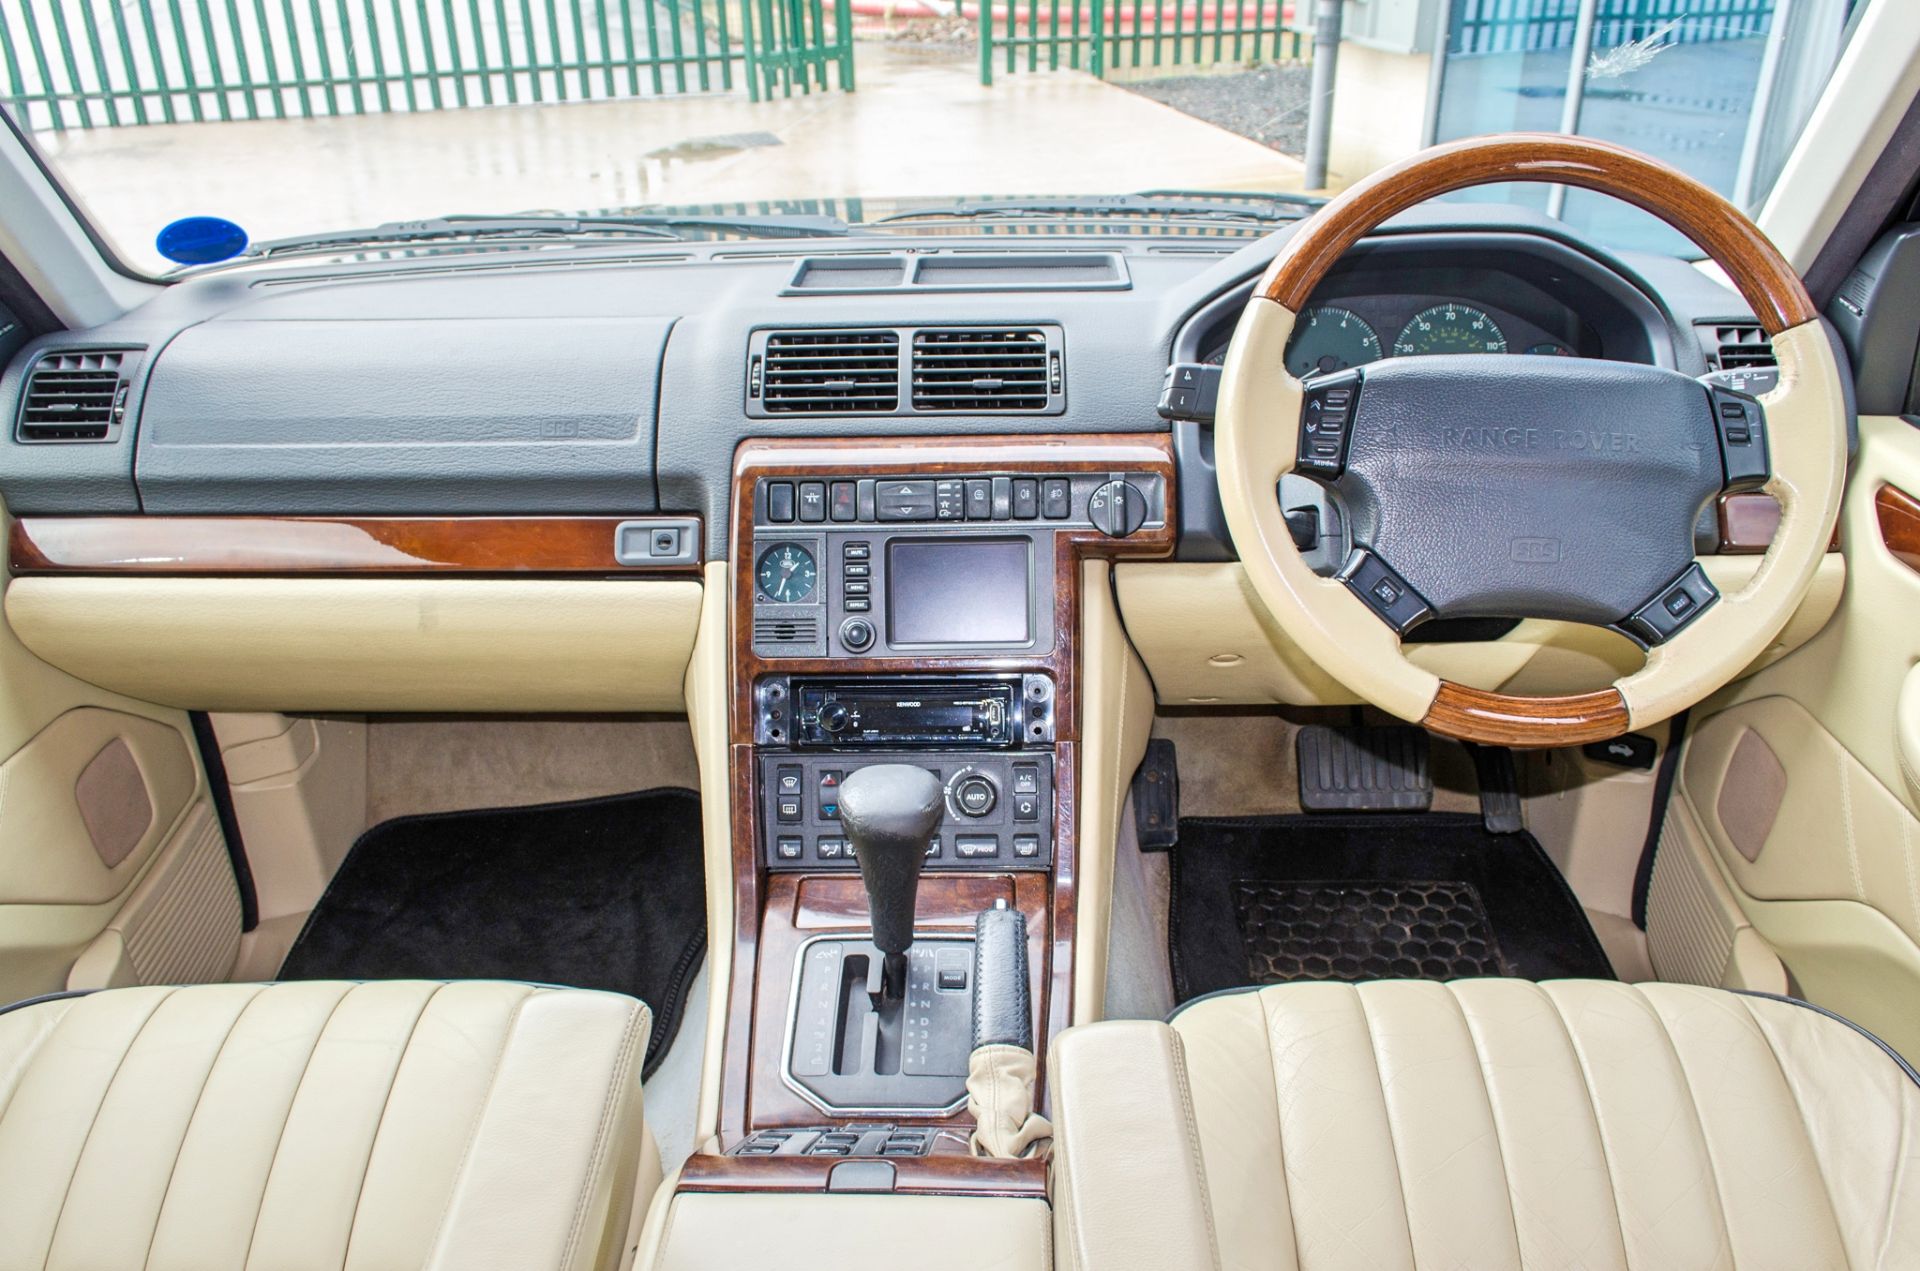 2001 Range Rover Vogue 4.6 litre V8 Auto 4 door SUV estate Registration: Y498 HNP Chassis: - Image 45 of 65